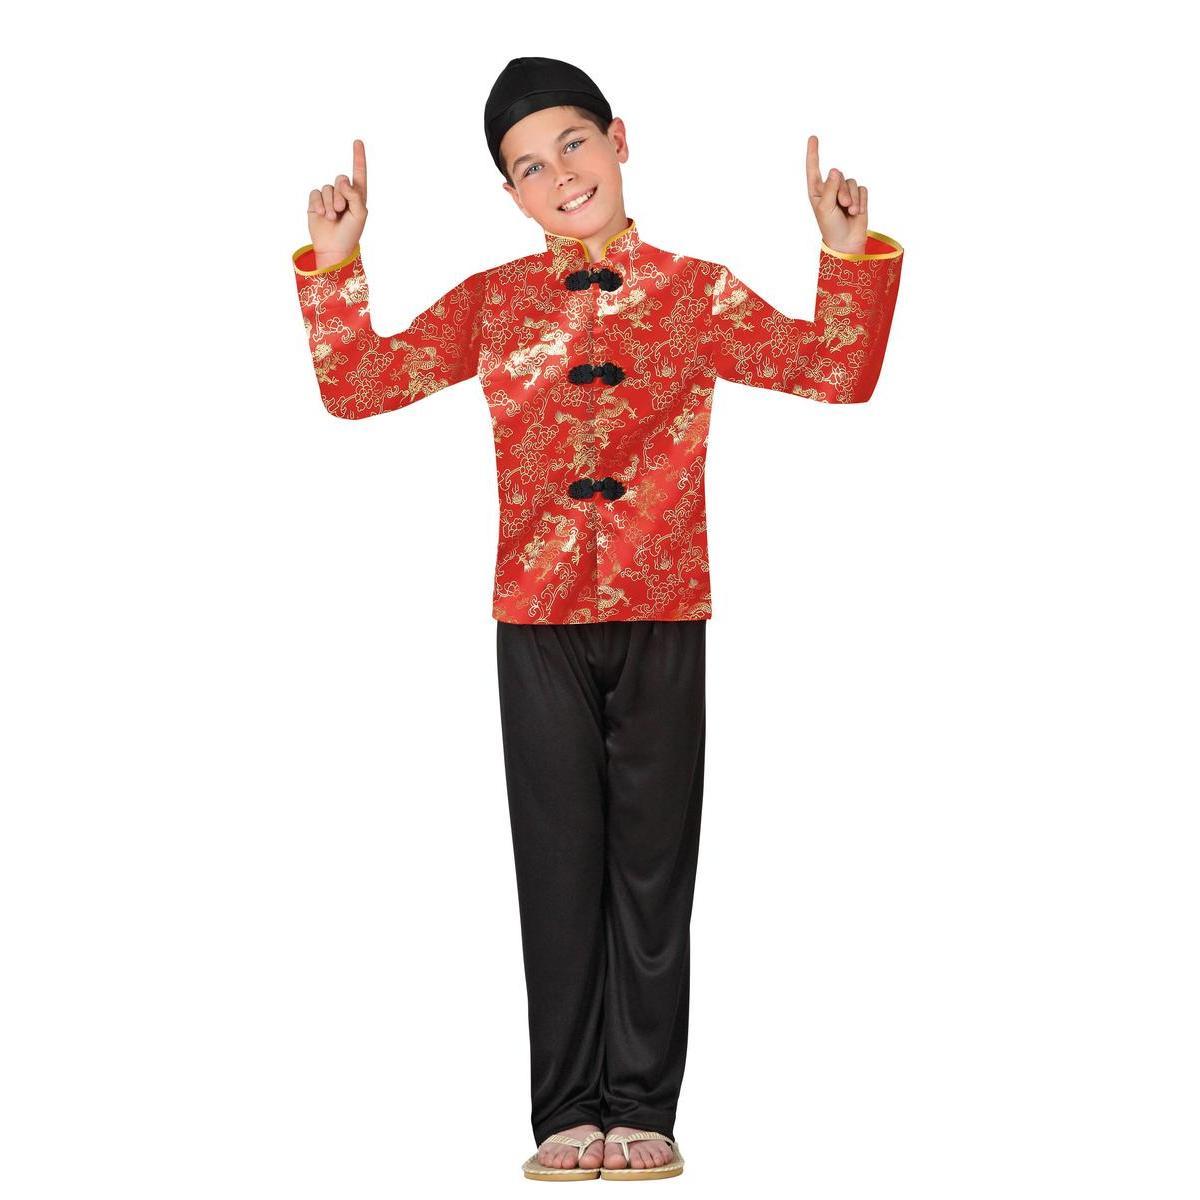 Vêtement traditionnel Chinois - Taille enfant (3 à 12 ans) - Rouge, or